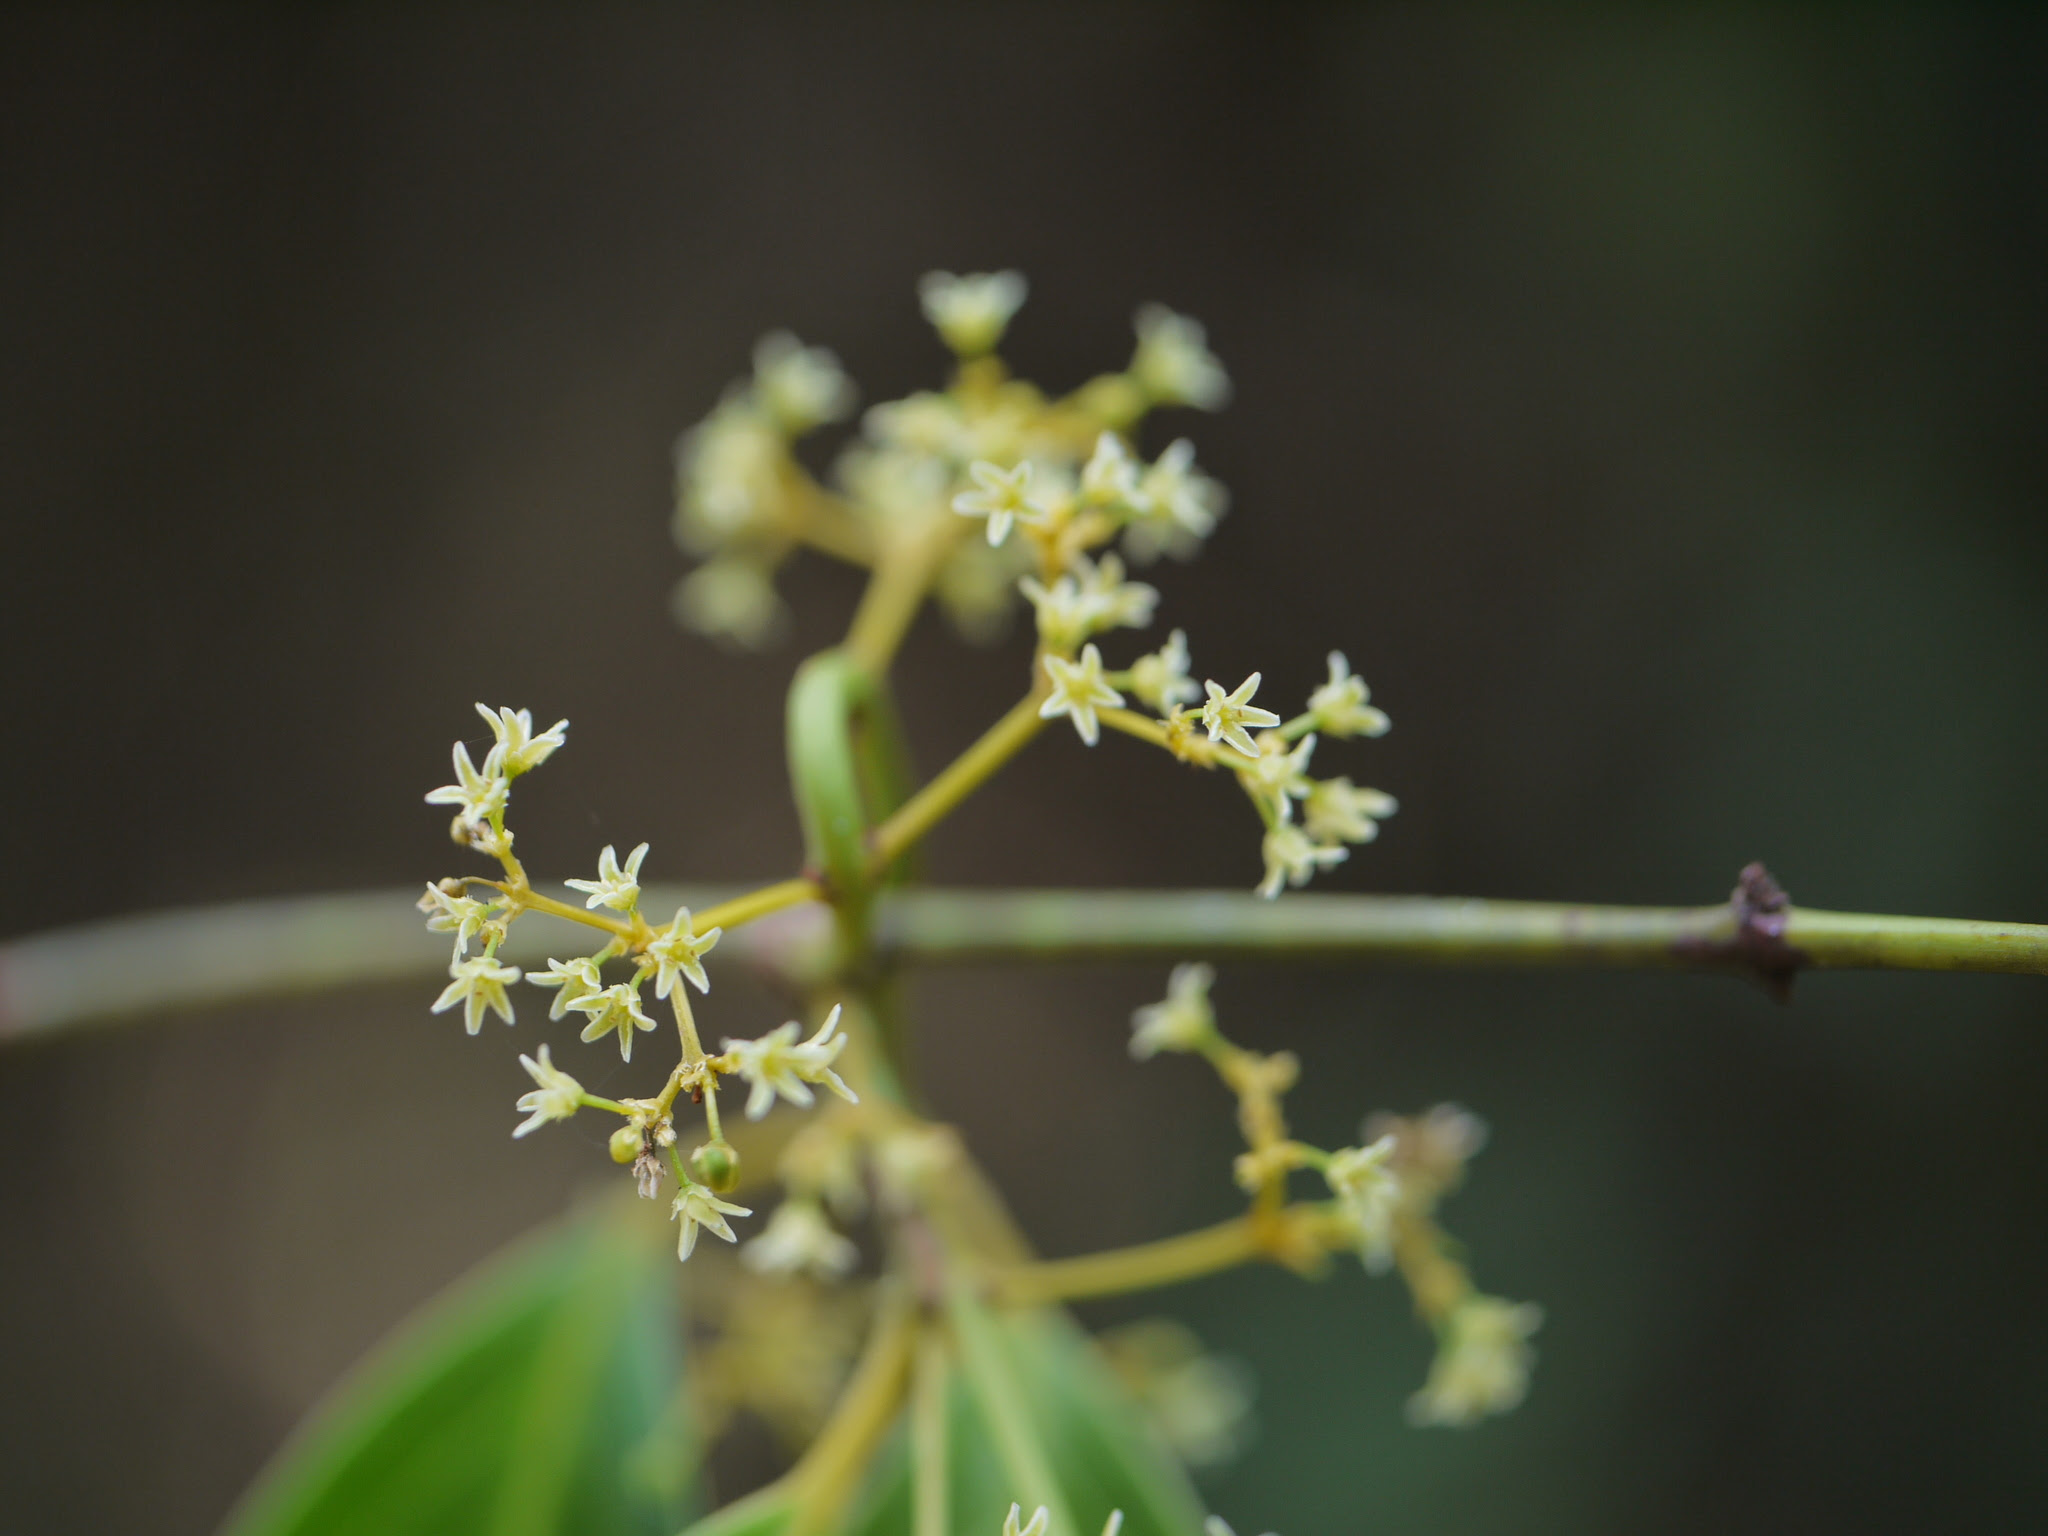 Reissantia indica (Willd.) N.Hallé